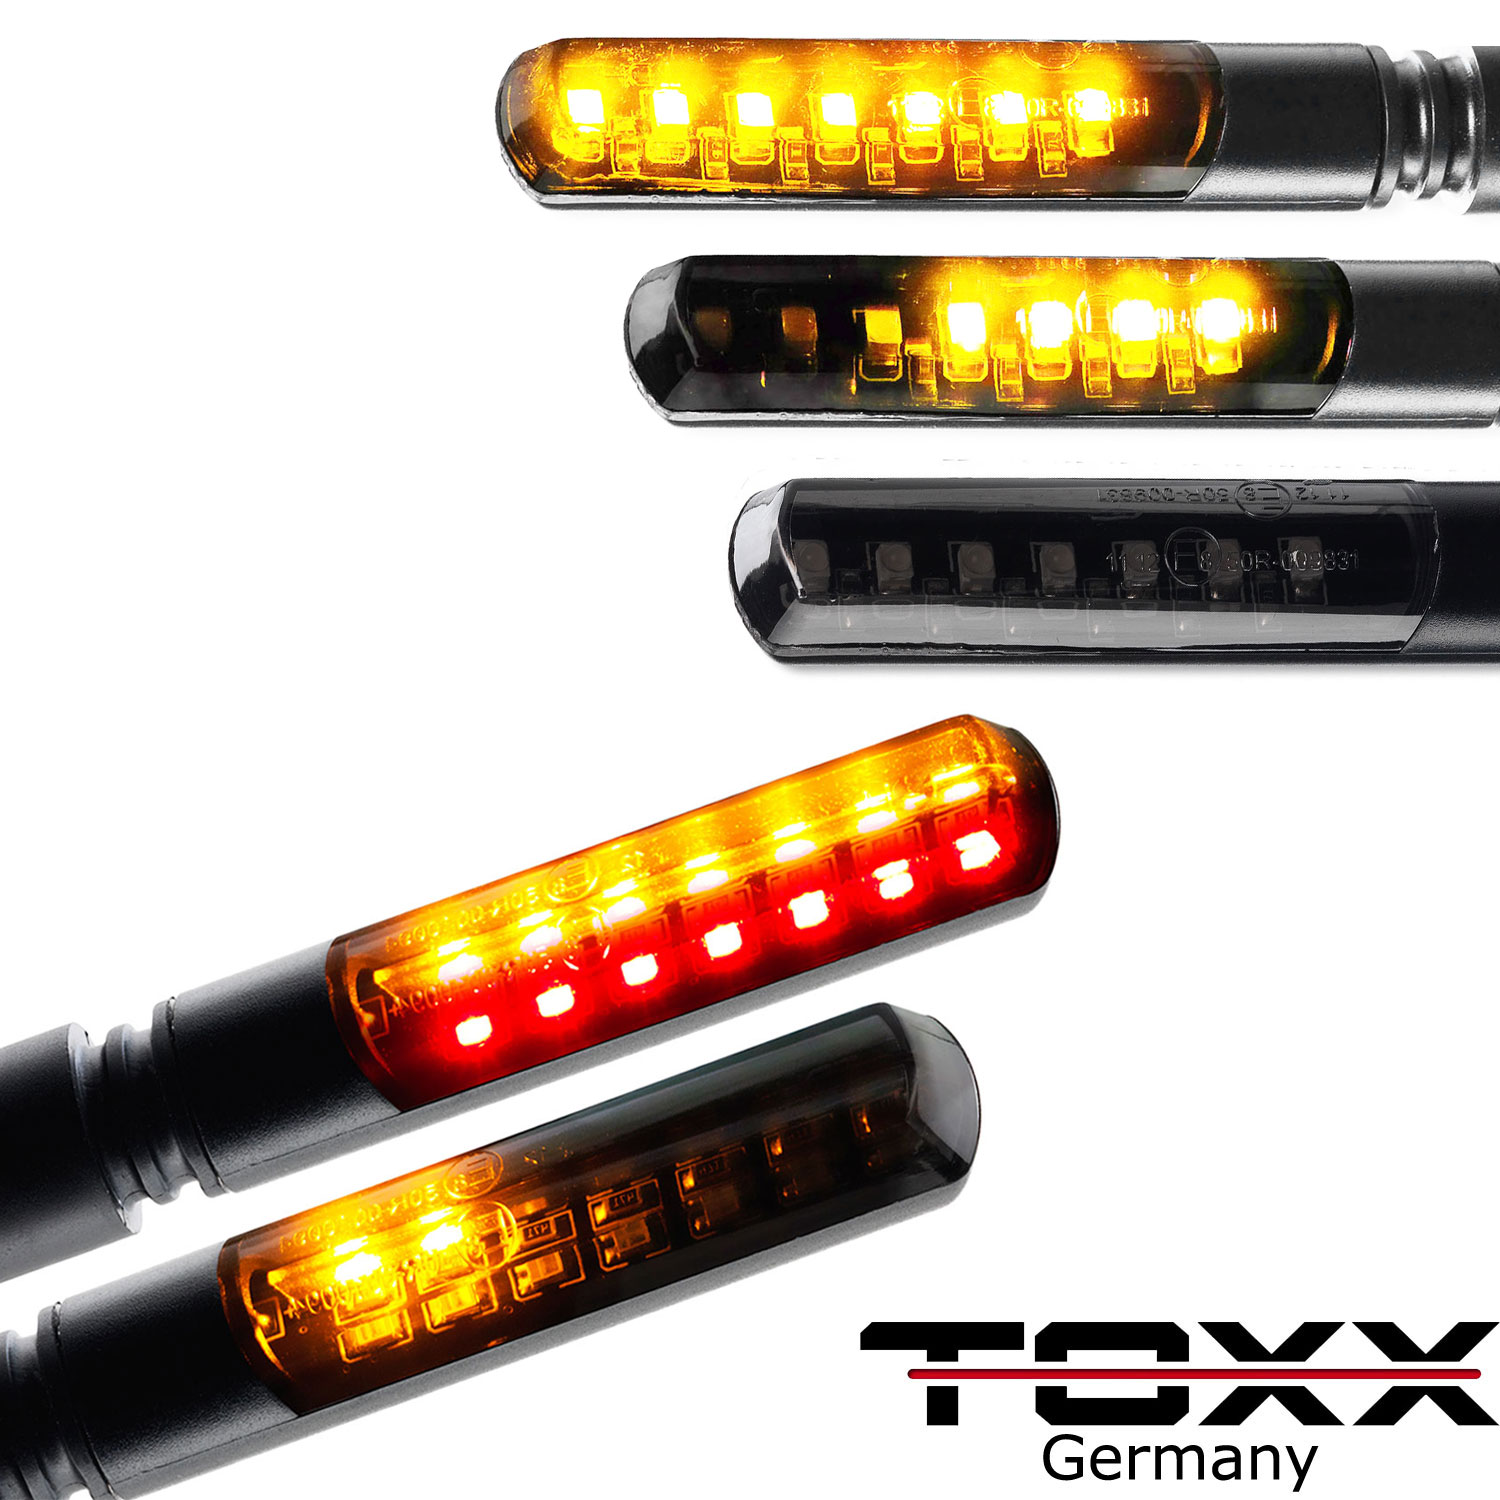 Motorrad LED Blinker & Lauflicht Blinker für dein Motorrad